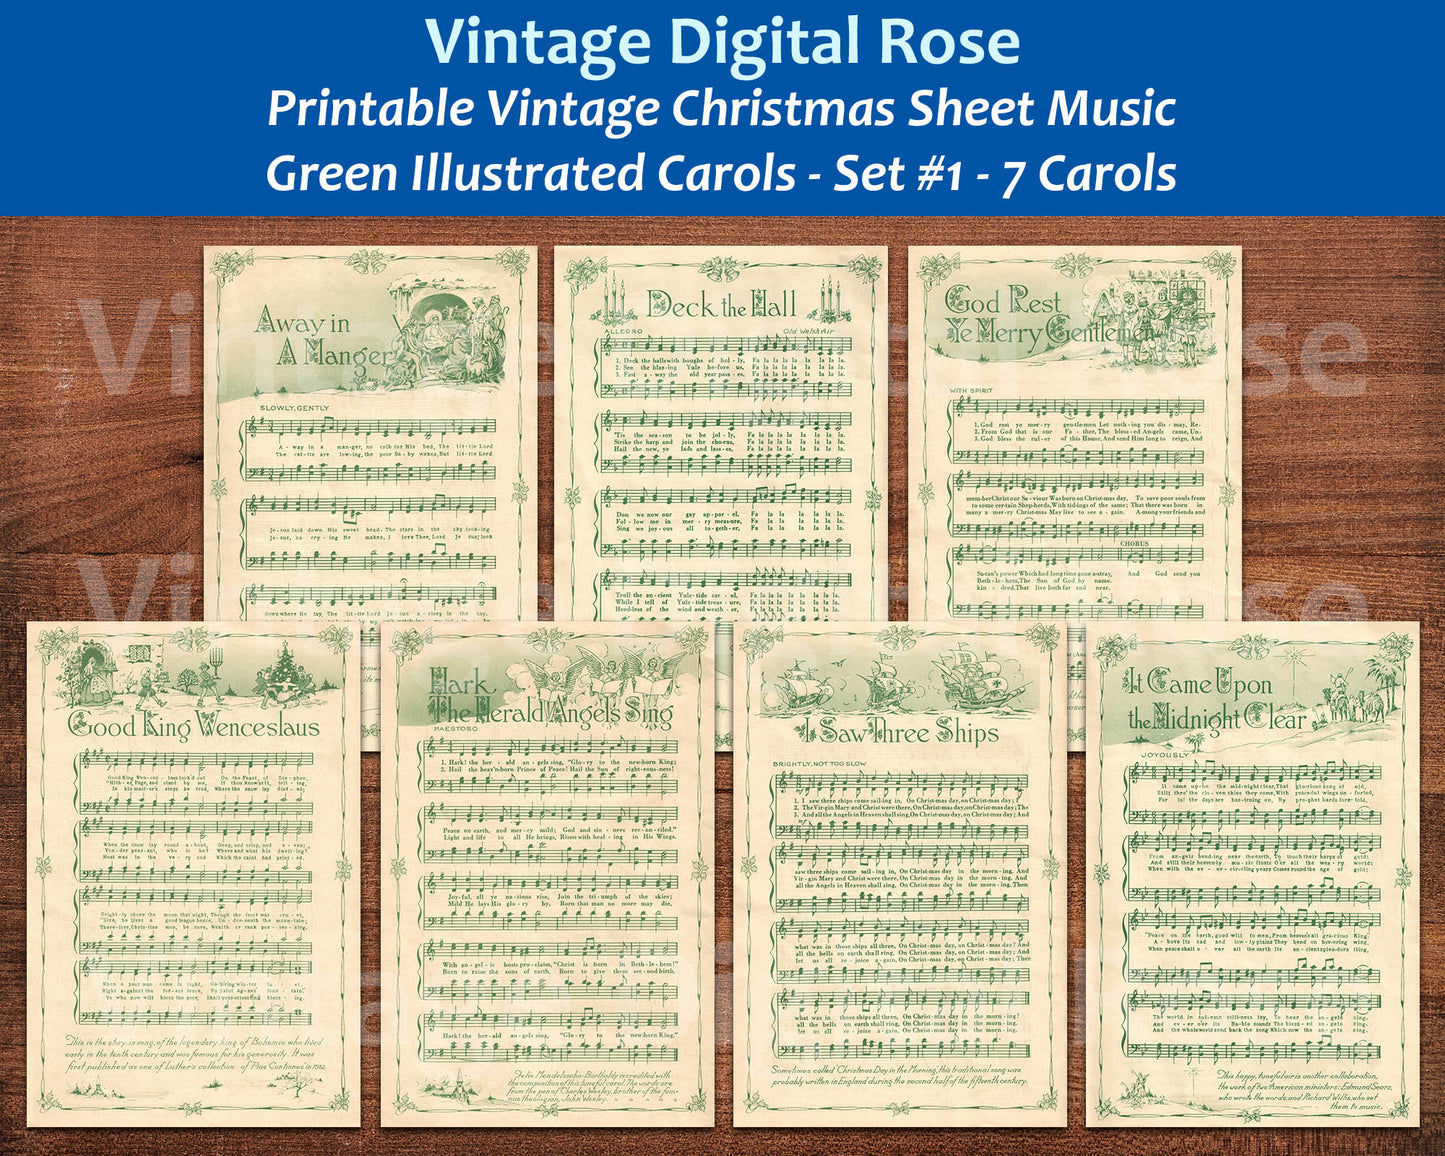 Printable Vintage Christmas Carols Green Illustrated Best Sellers Top Christmas Songs Set of 7 - Set #1